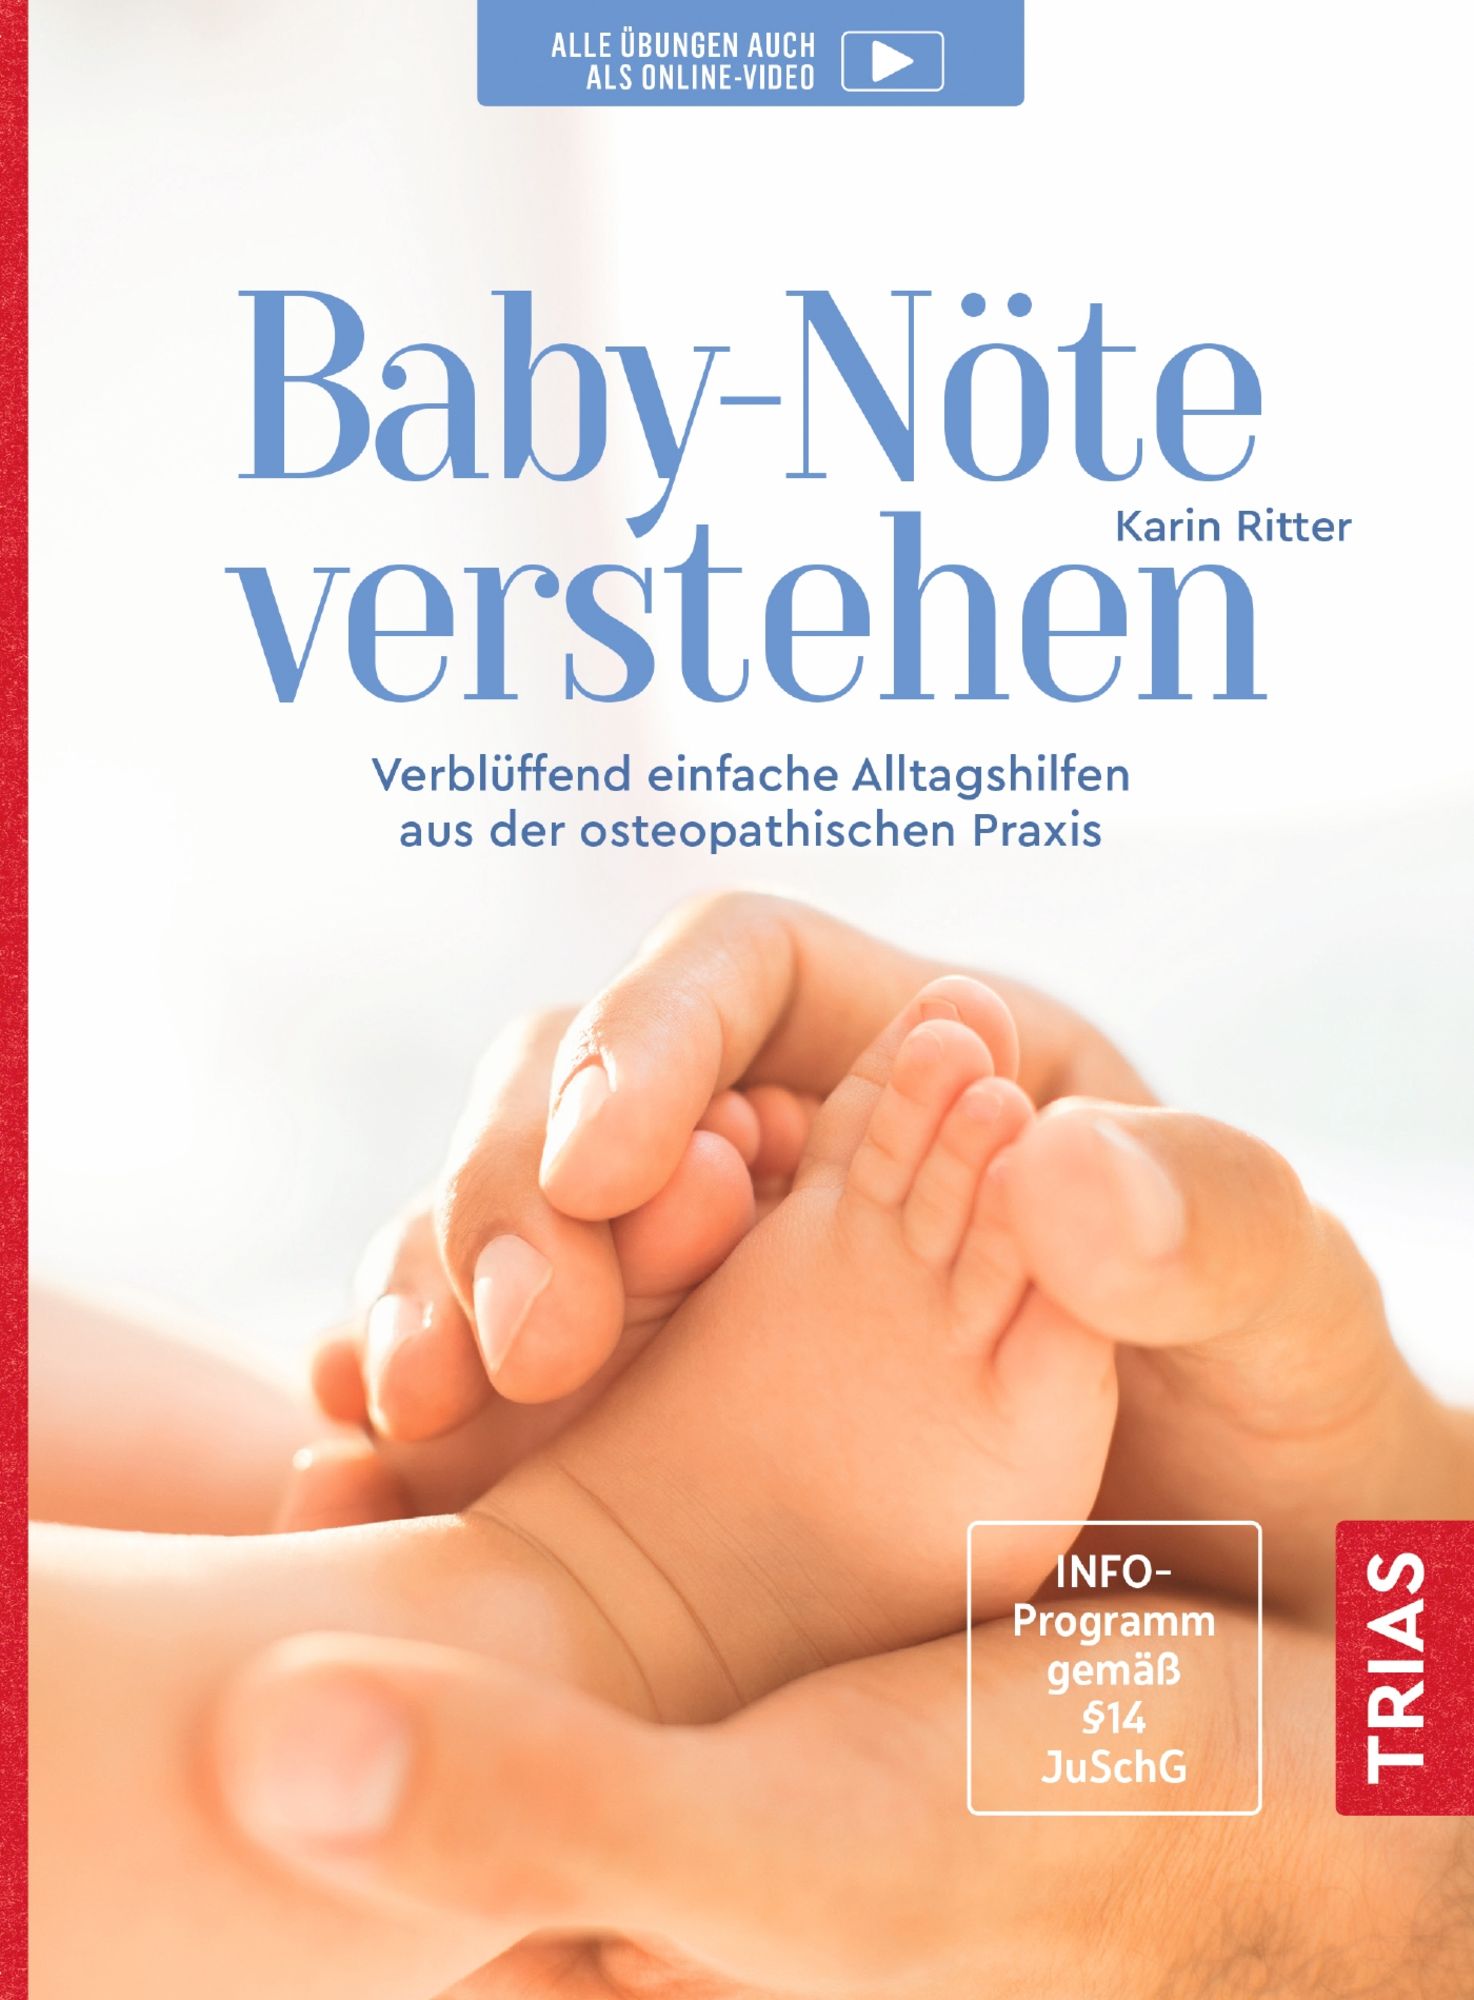 https://images.thalia.media/-/BF2000-2000/f9cc38113a024d70ab7b37def18eeceb/baby-noete-verstehen-taschenbuch-karin-ritter.jpeg